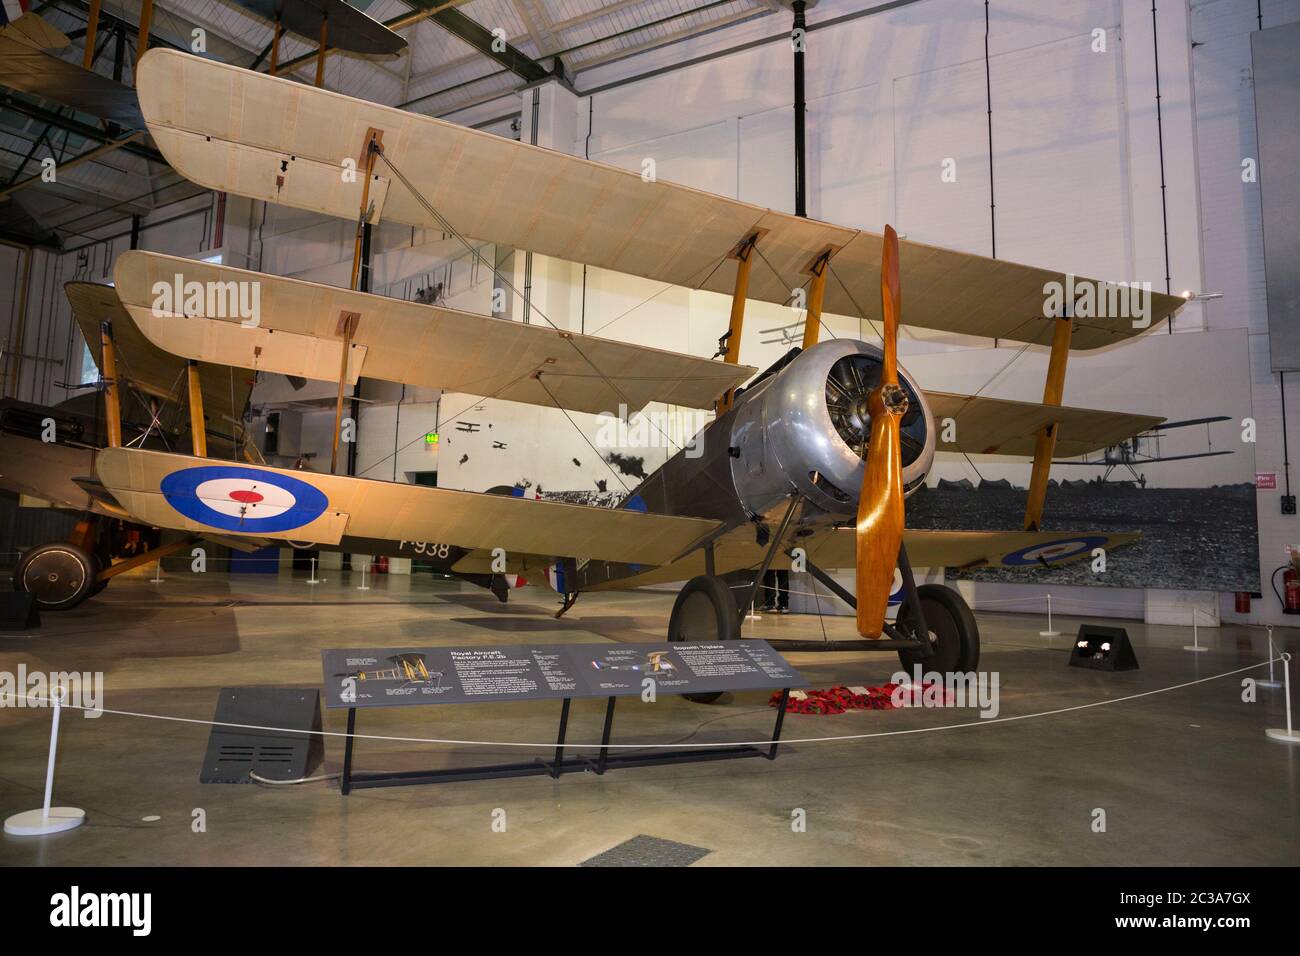 Sopowith Triplane; avion scout de la première Guerre mondiale. Hangar 2 / H2 la première guerre mondiale dans l'air, RAF Royal air force Museum, Hendon Londres UK (117) Banque D'Images